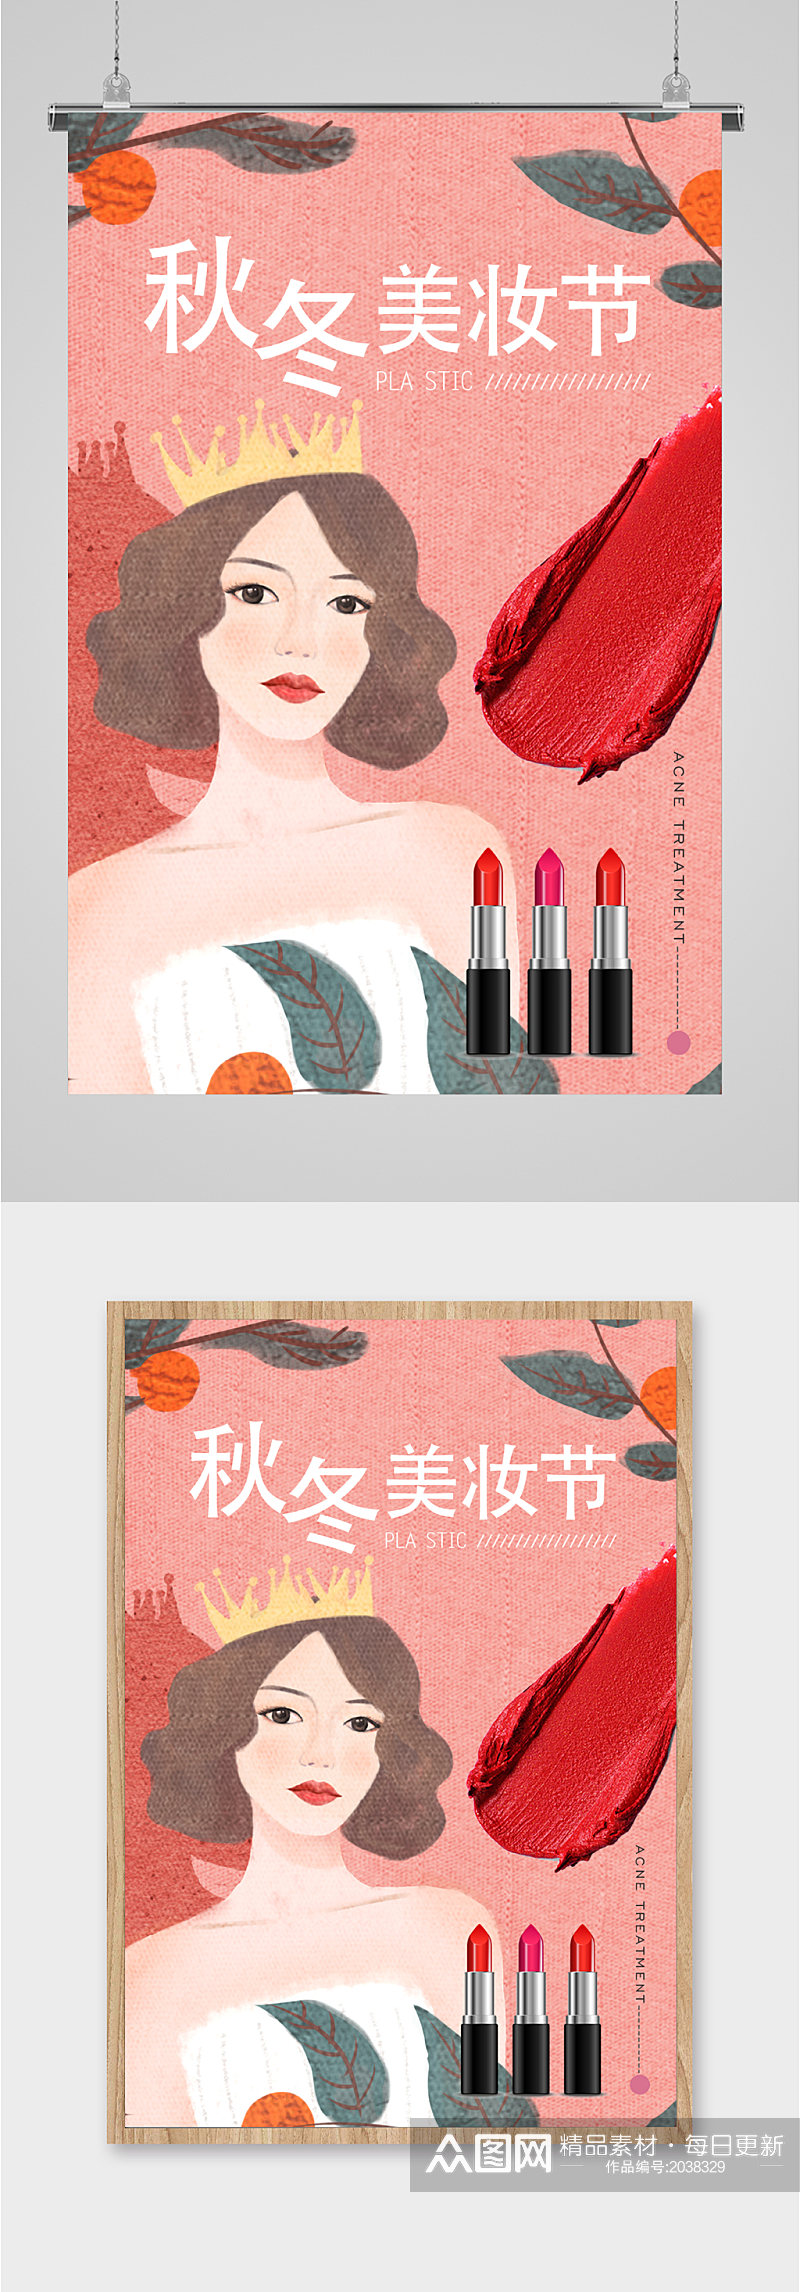 秋冬美妆季销售海报素材